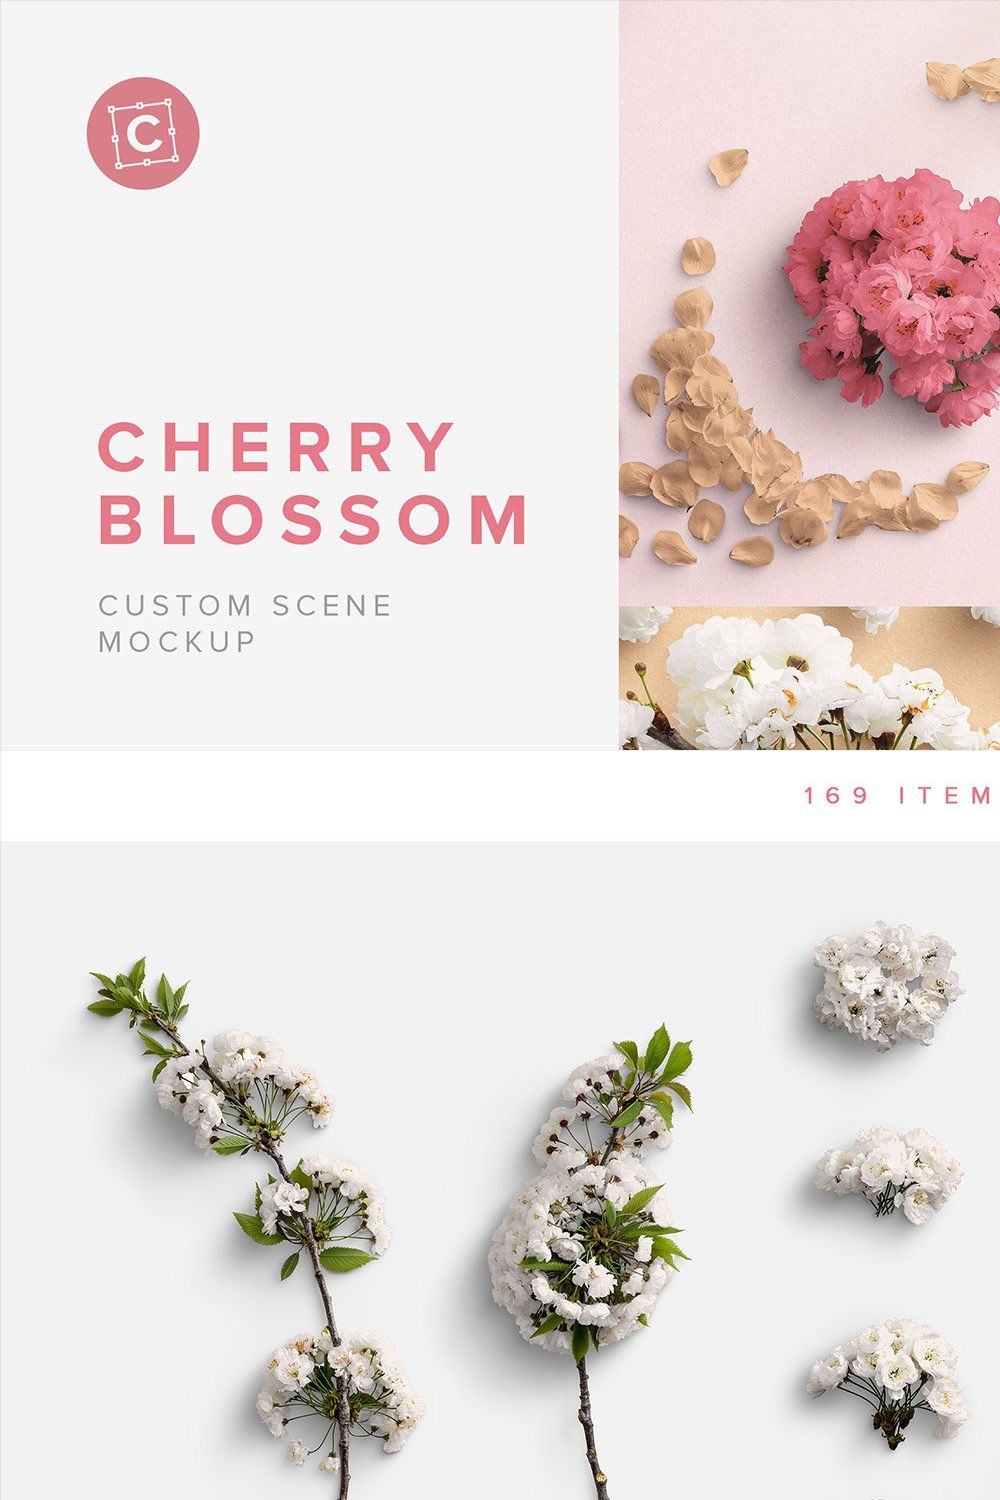 Cherry Blossom Custom Scene pinterest preview image.